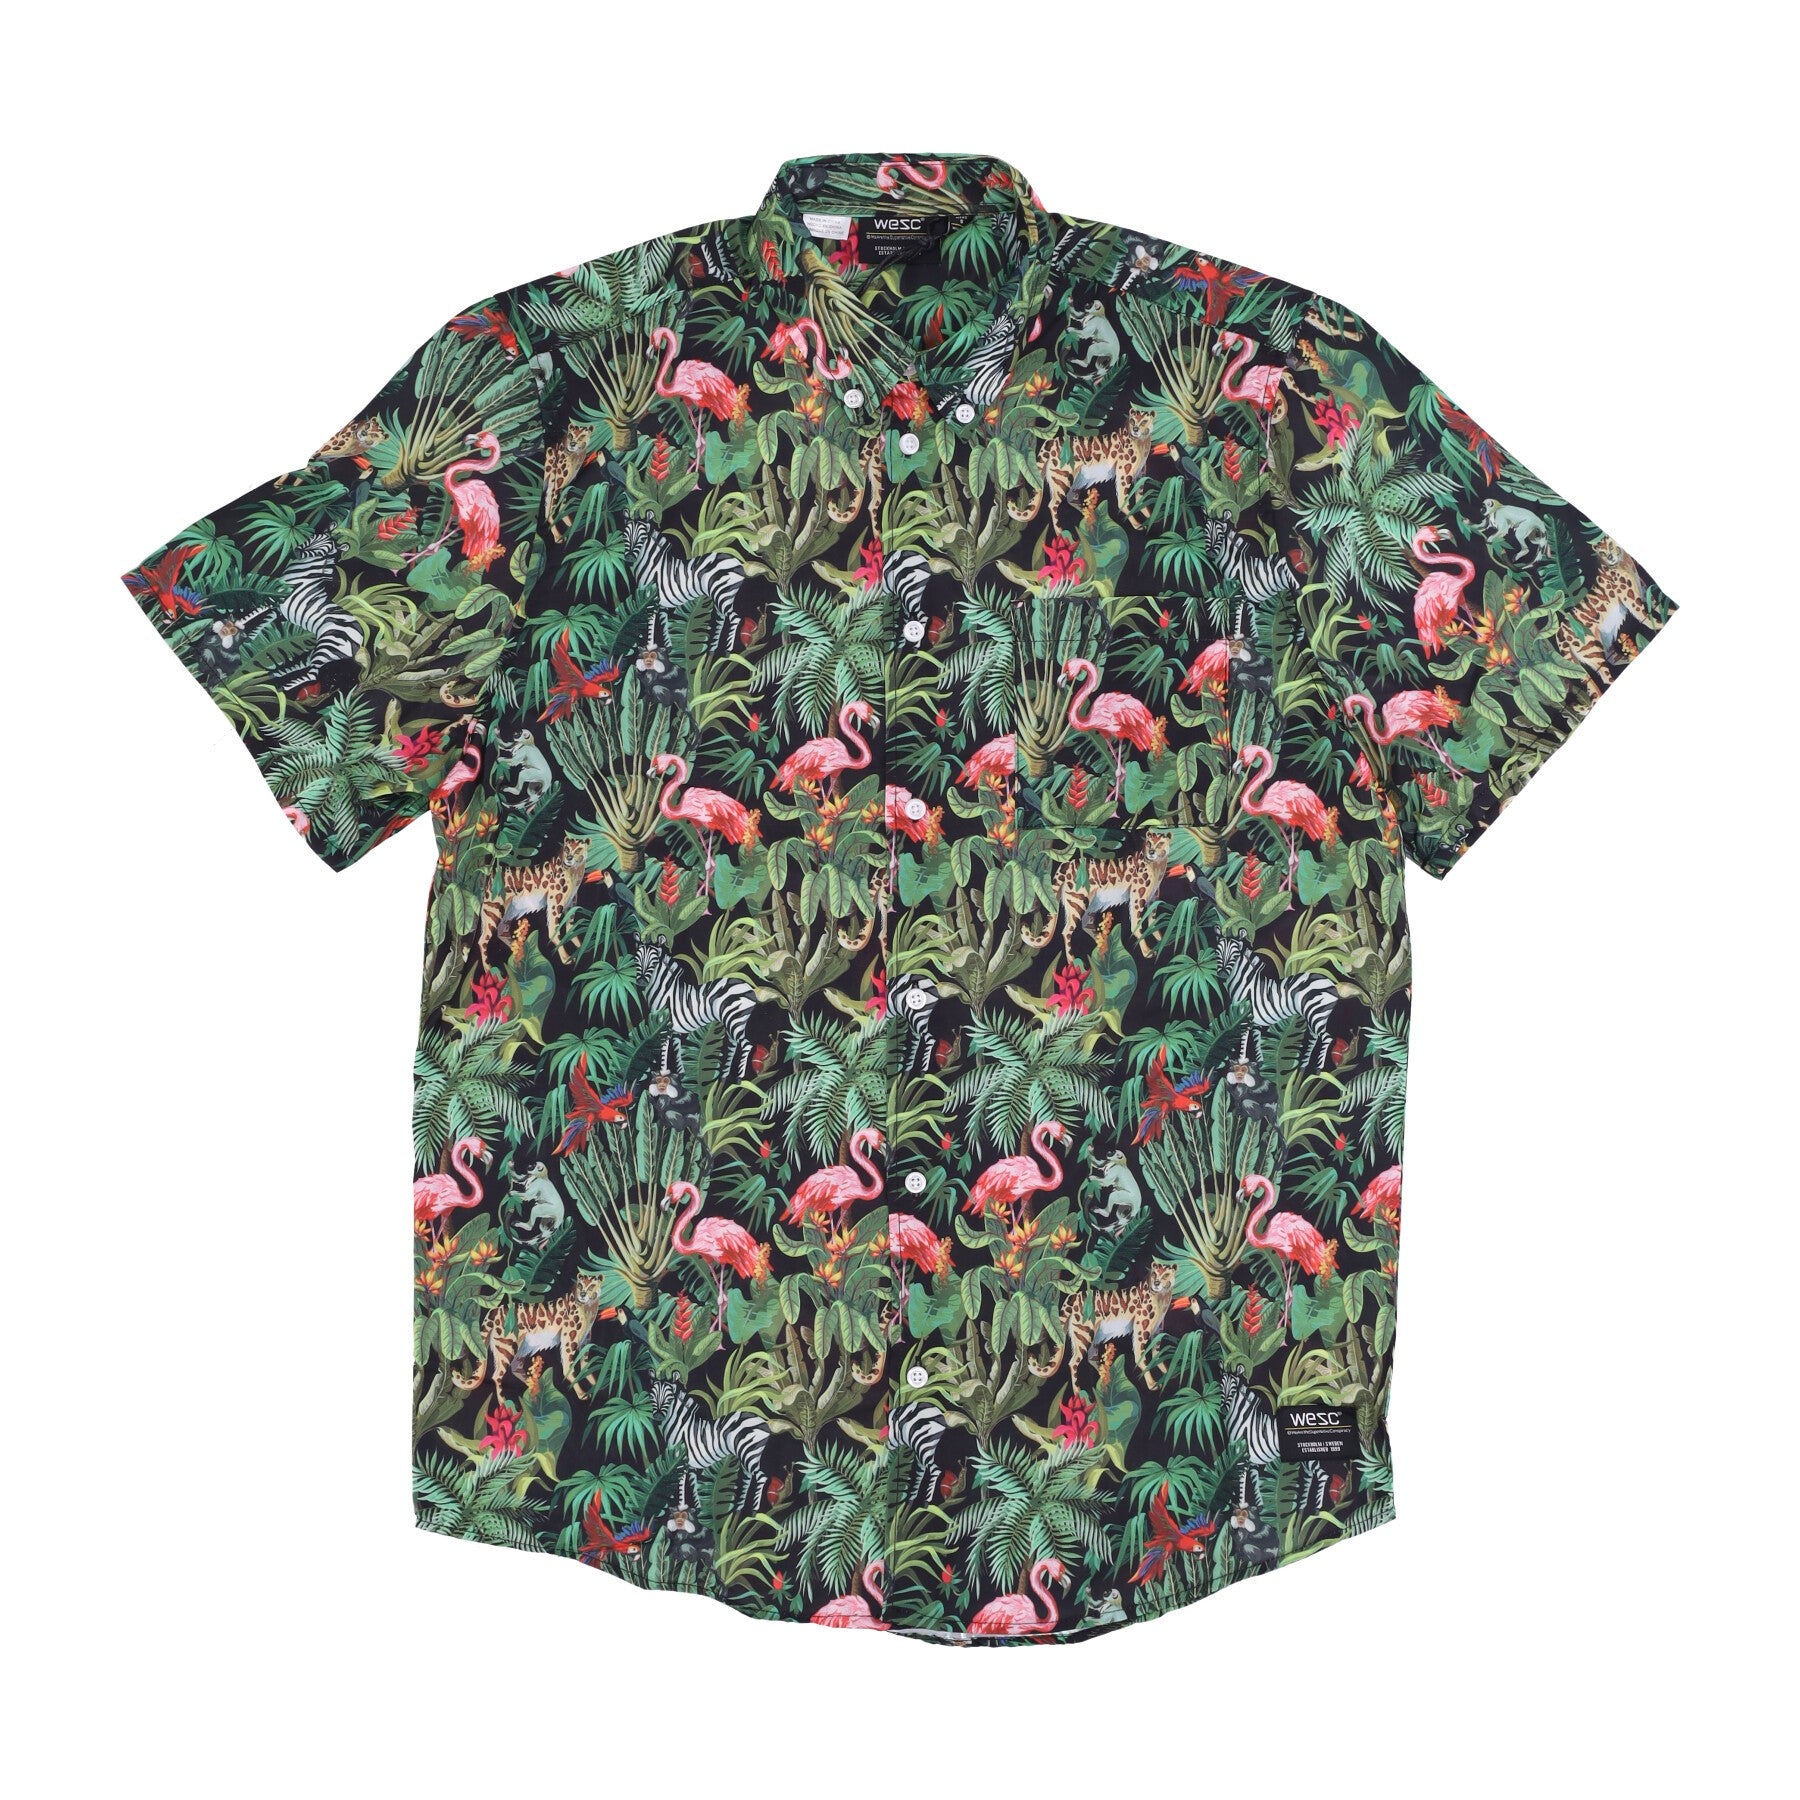 Oden Wildlife Aop Shirt Men's Short Sleeve Shirt Multi